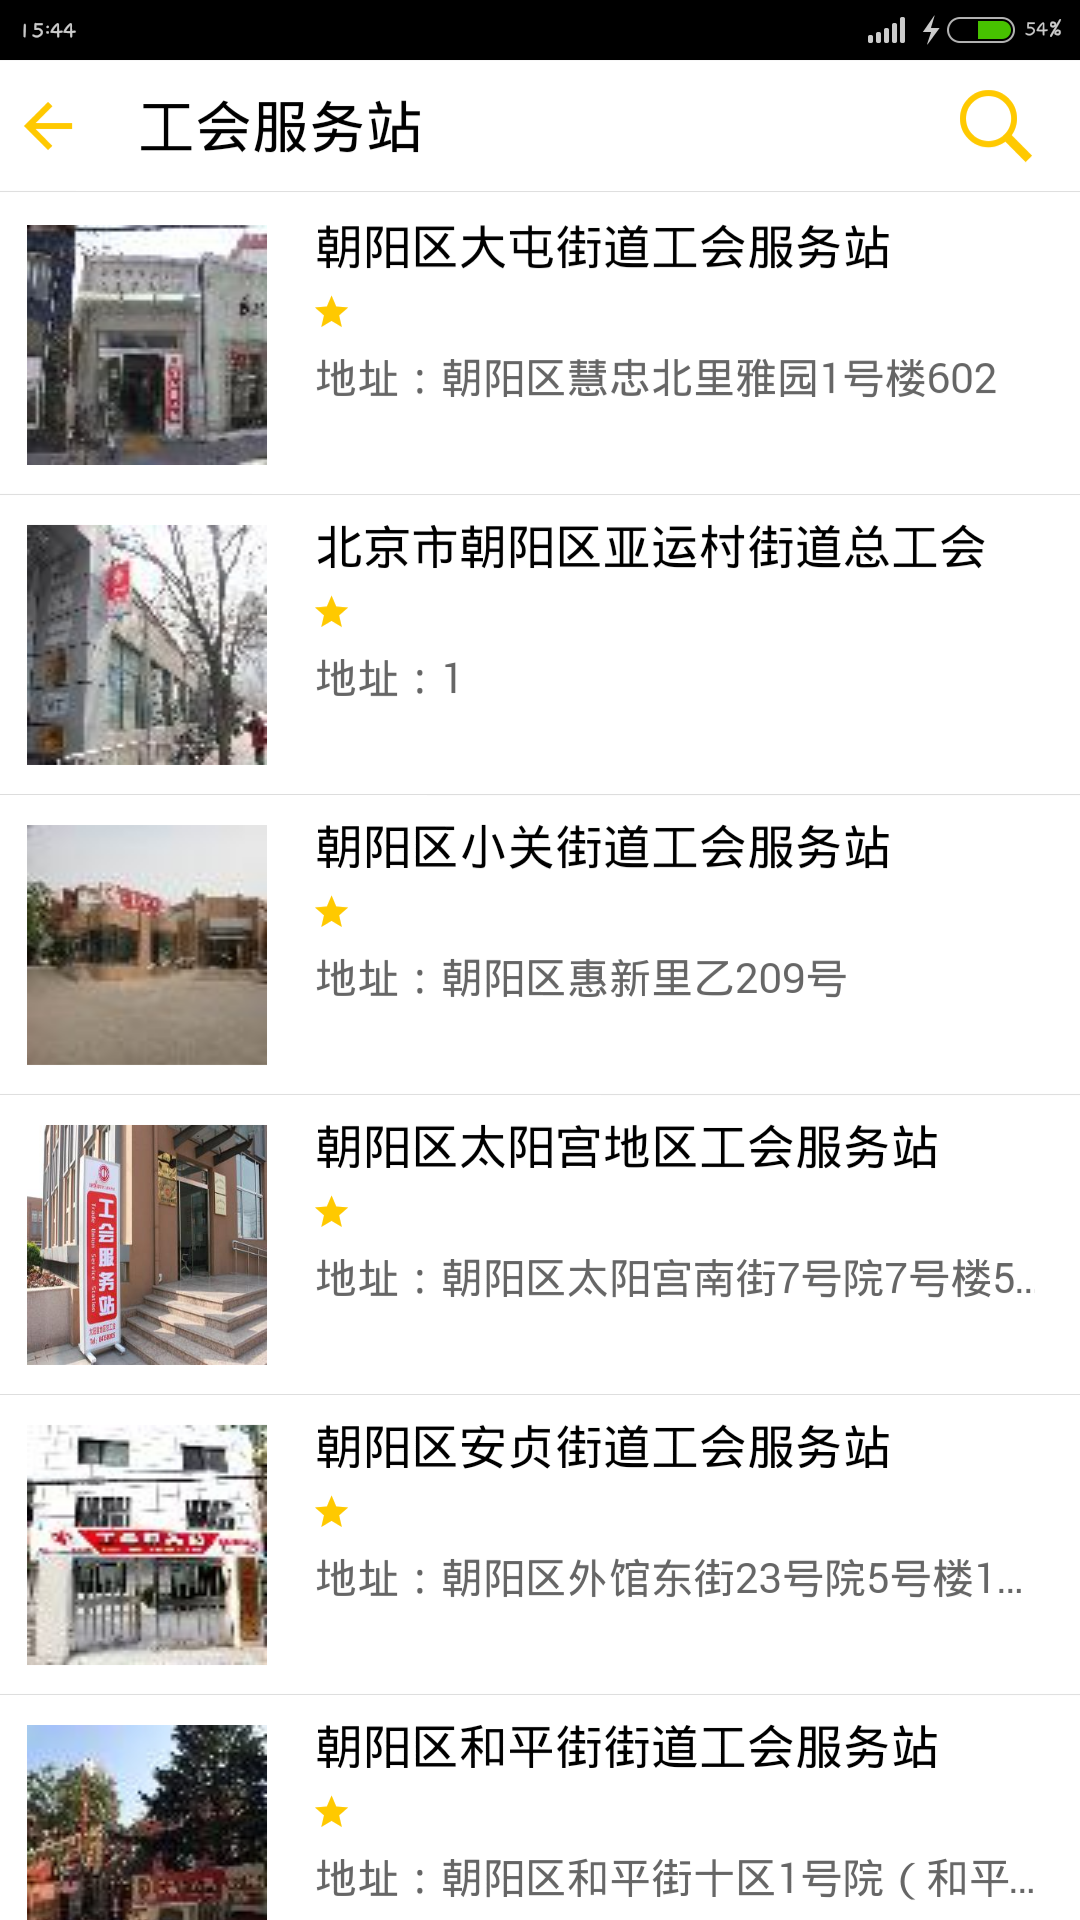 北京工会12351 iPhone版 v3.9.0 苹果越狱版1